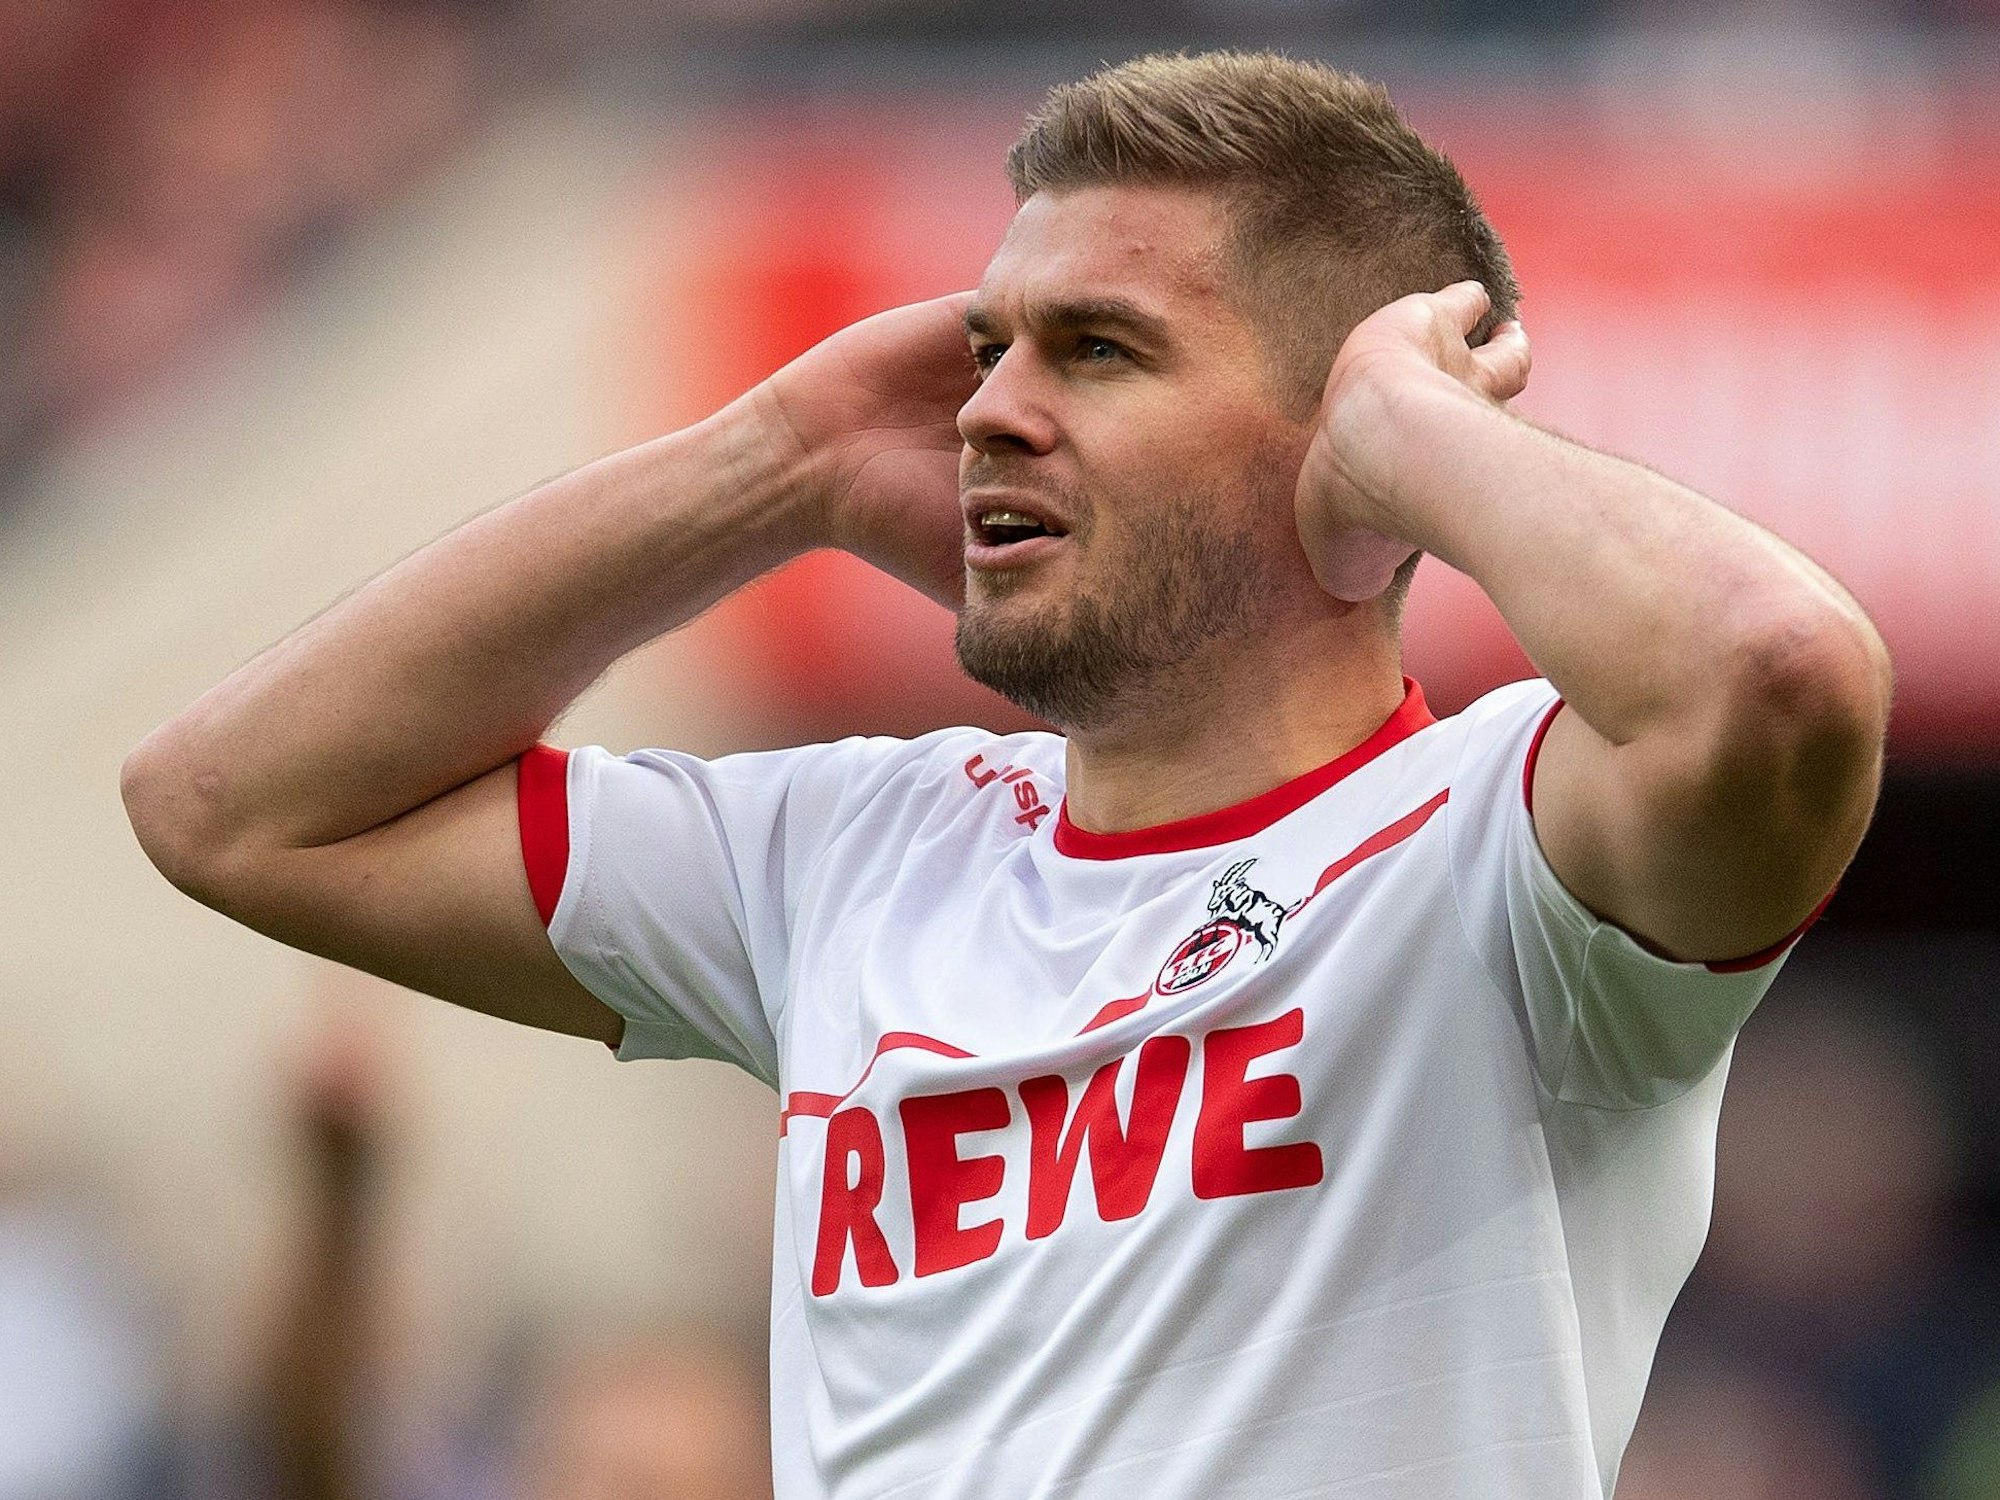 Simon Terodde vom 1. FC Köln jubelt, indem er seine geöffneten Hände an die Ohren hält.